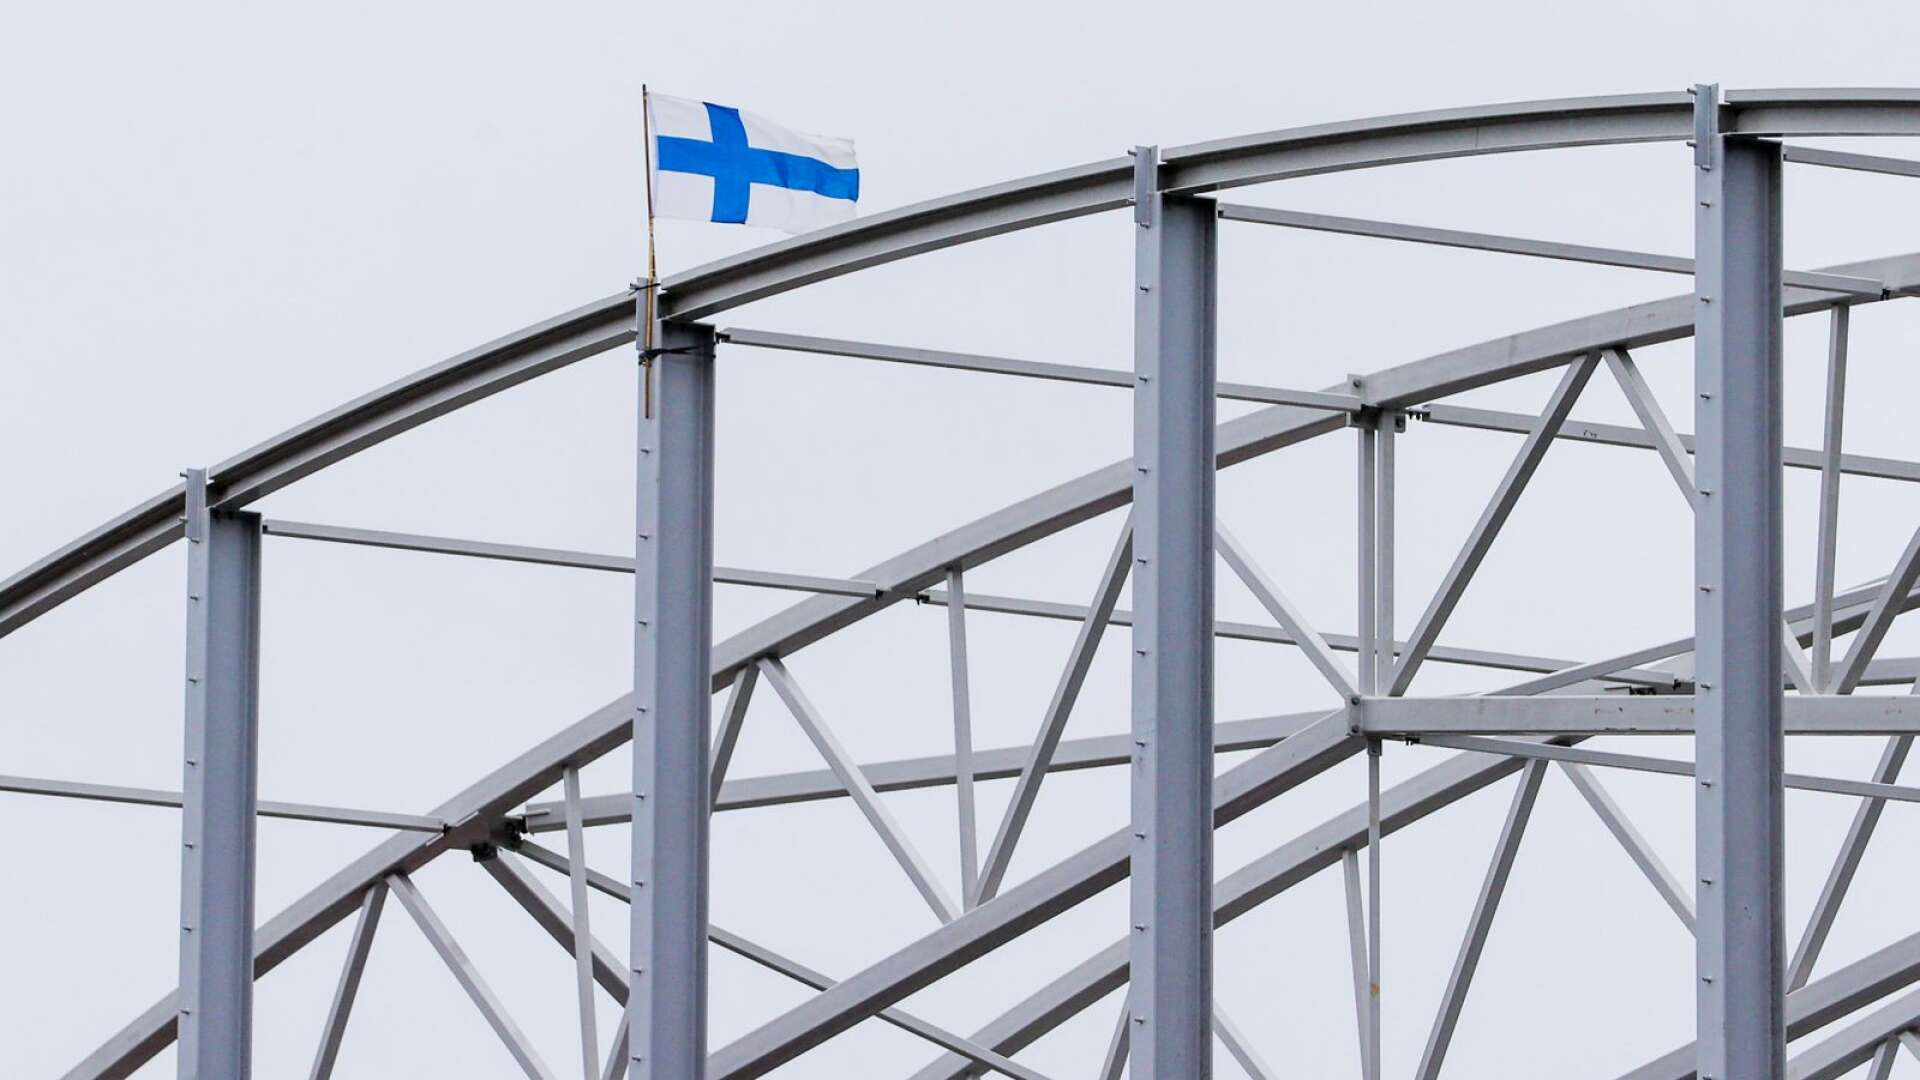 Den finska flaggan har hissats på en av takstolarna på Tingvalla isstadion.